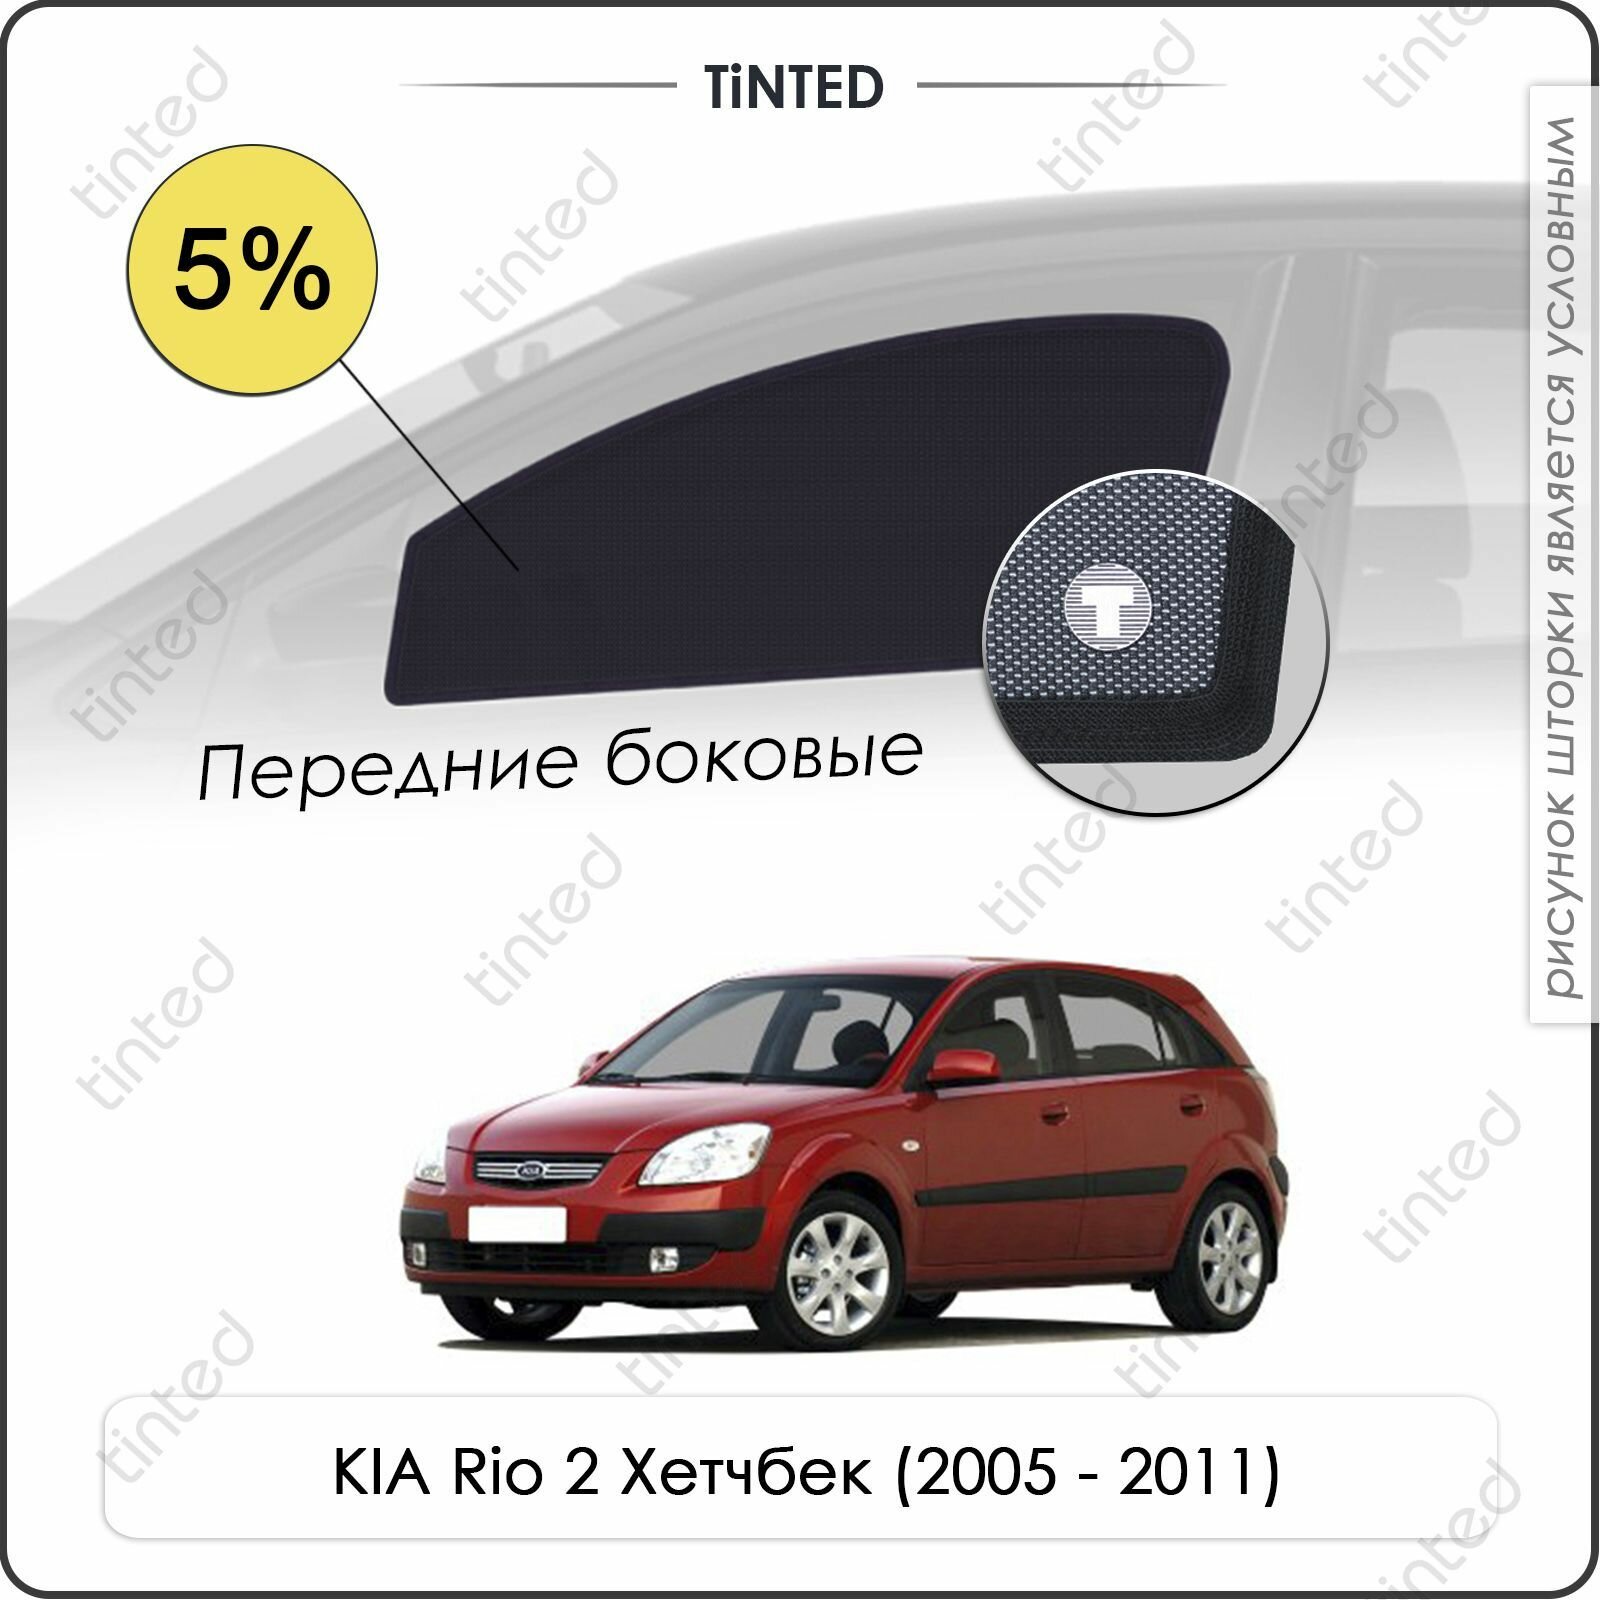 Шторки на автомобиль солнцезащитные KIA Rio 2 Хетчбек 5дв. (2005 - 2011) на передние двери 5%, сетки от солнца в машину КИА РИО, Каркасные автошторки Premium